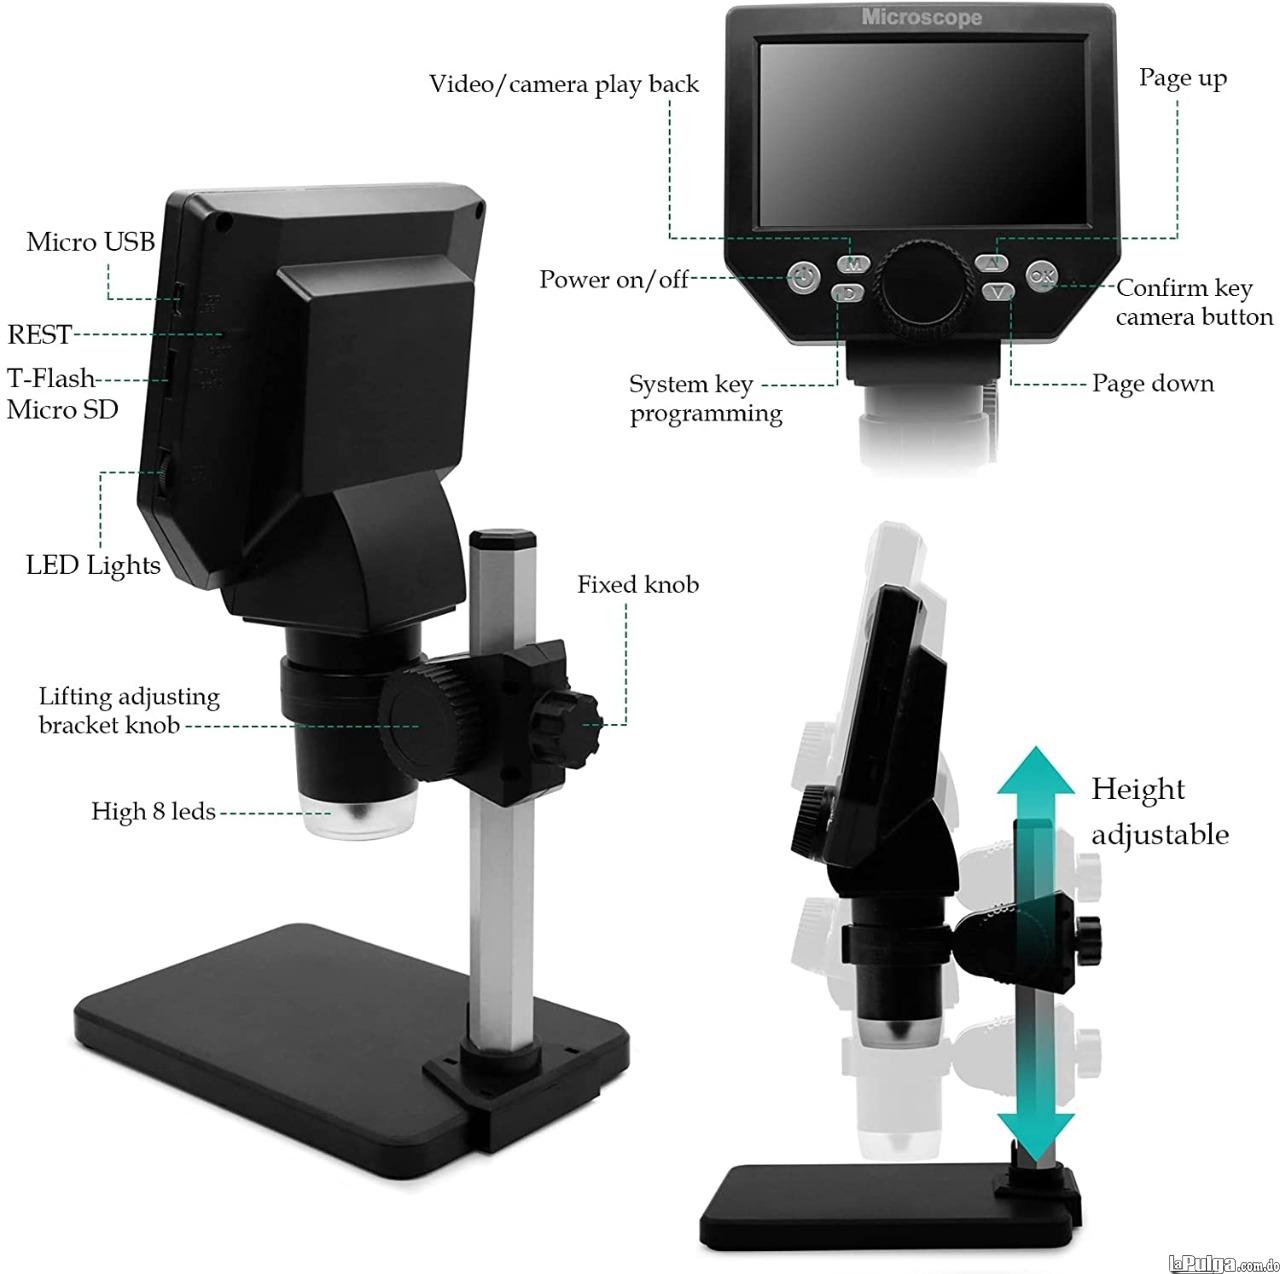 Microscopio USB digital con pantalla 4.3 pulgadas 1000X soporte ajusta Foto 7054740-1.jpg